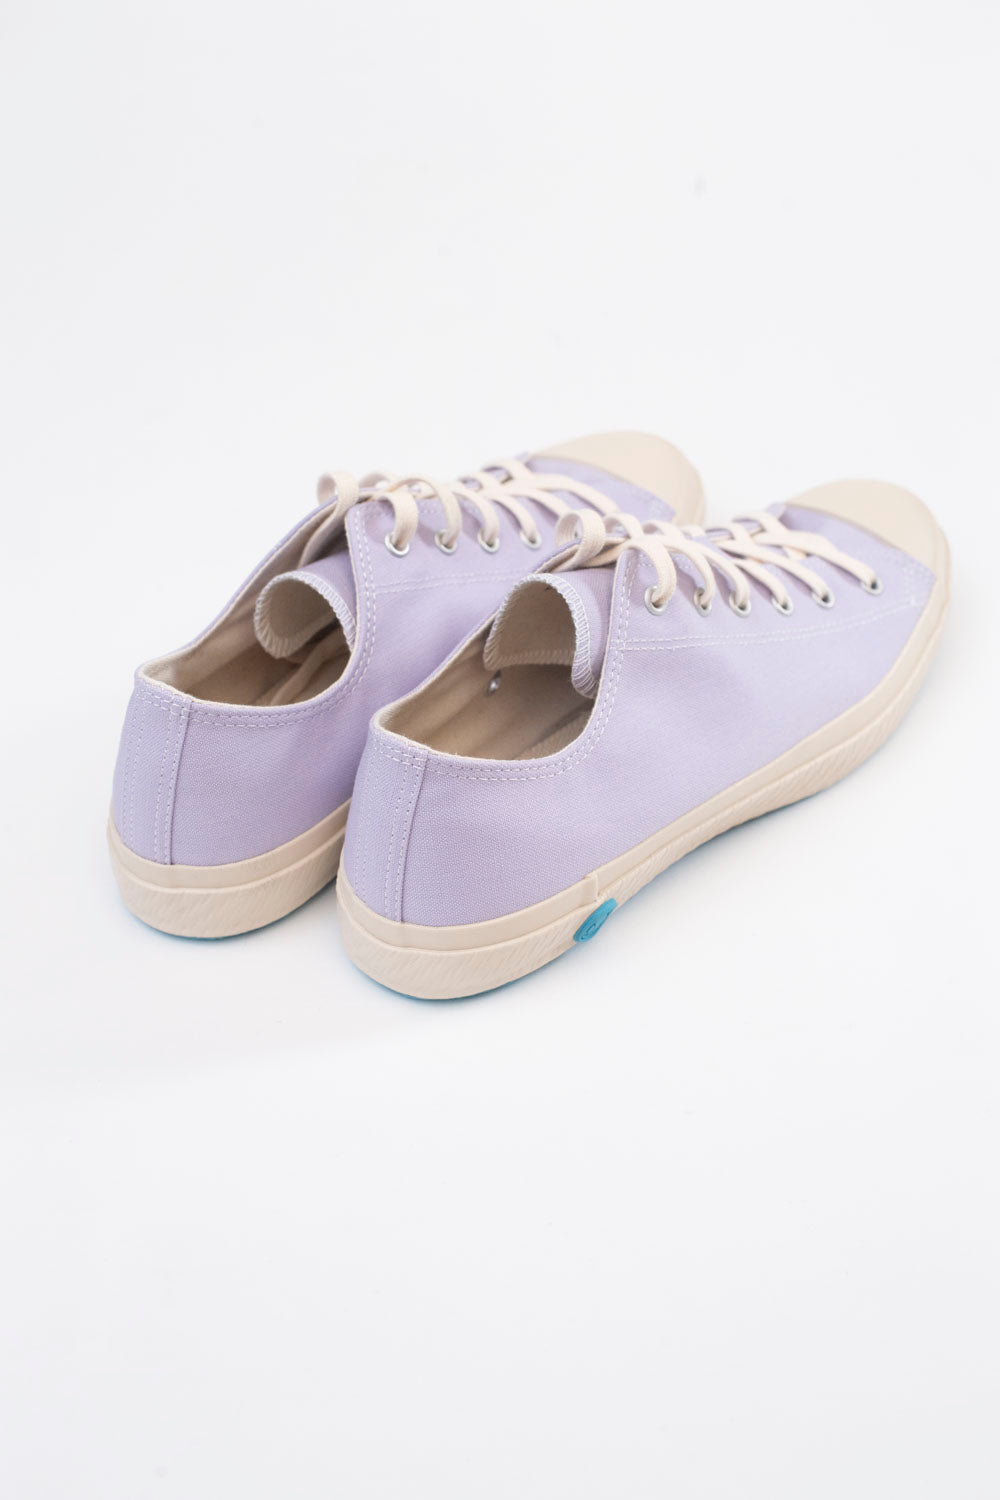 01JP Low Sneaker - Light Purple